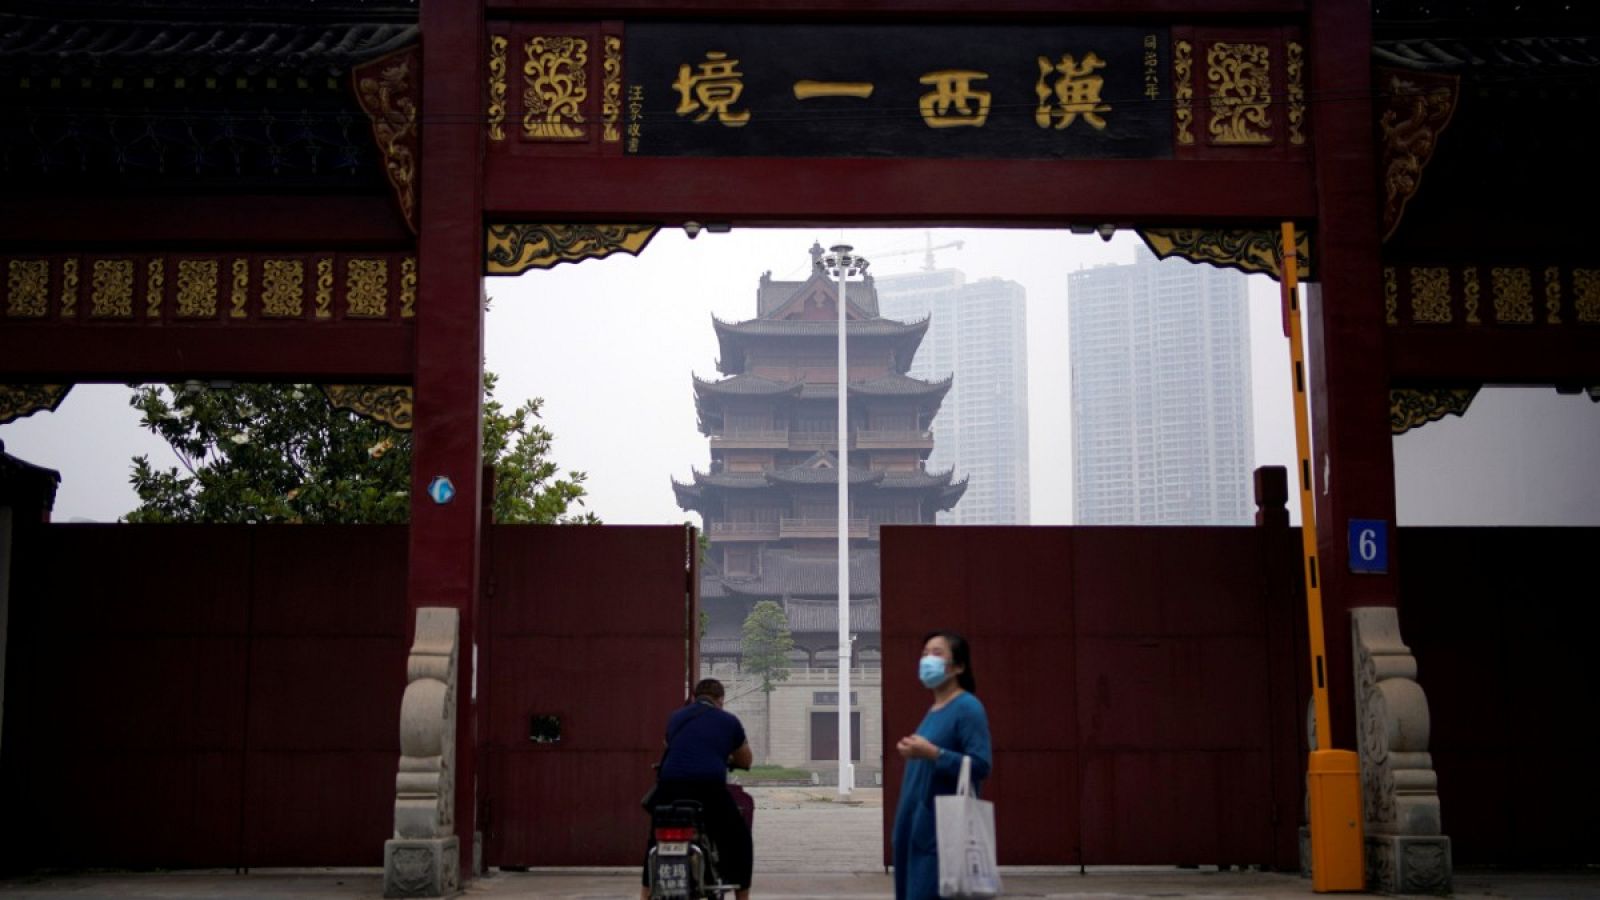 Una mujer con mascarilla caminando frente a un templo en Wuhan, China.